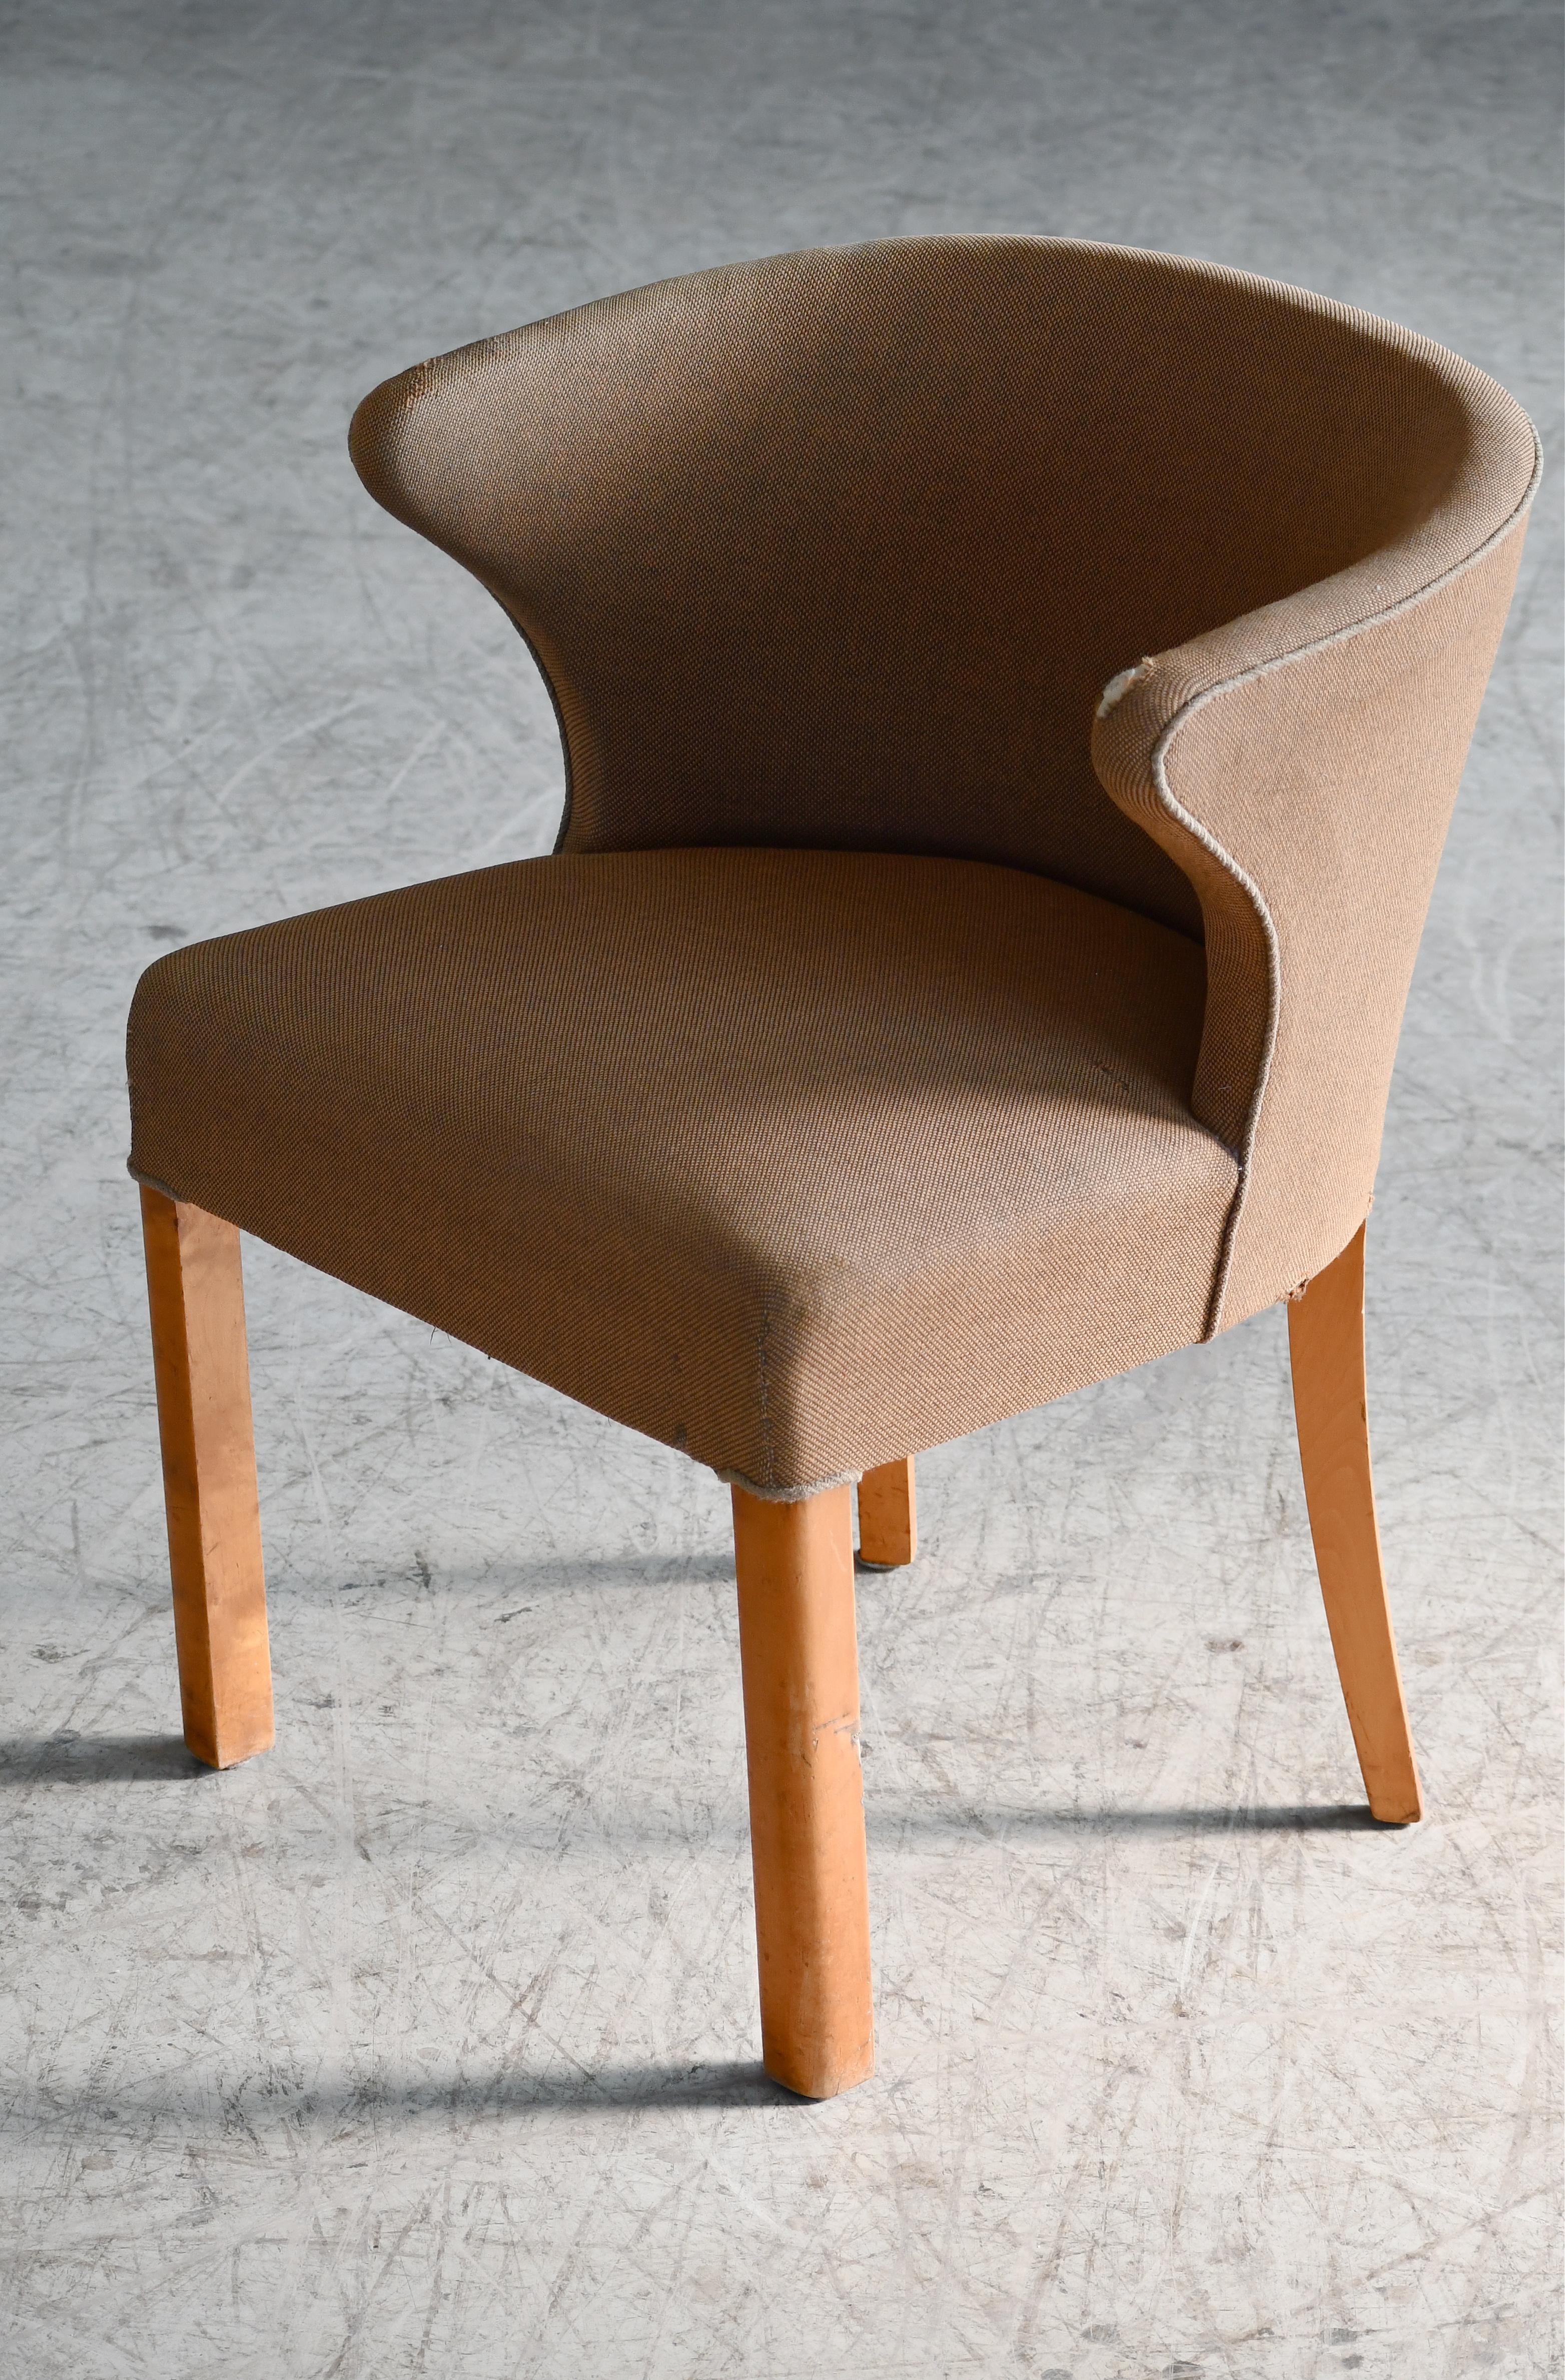 Très belle petite chaise d'appoint. Solides et robustes. Nous aimons le design avec la hauteur d'assise élevée et le dossier bas. Très charmant, élégant et polyvalent avec des pieds en érable naturel. Très bon état général. Nous pouvons retapisser à